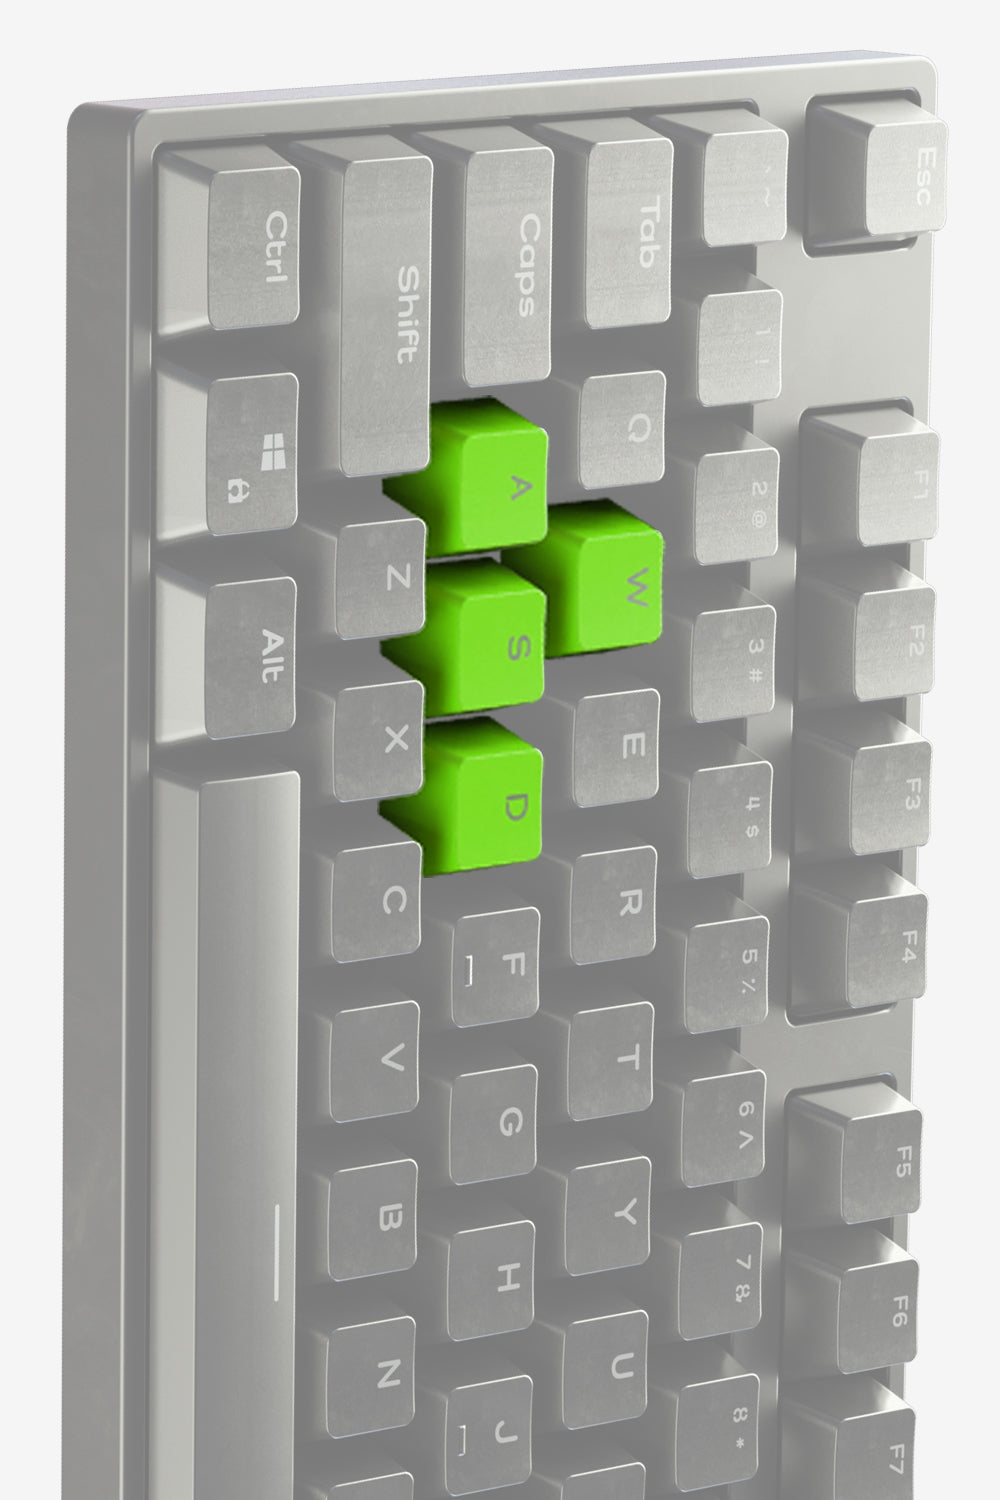 WASD Keycap Set - Gaming Keyboards